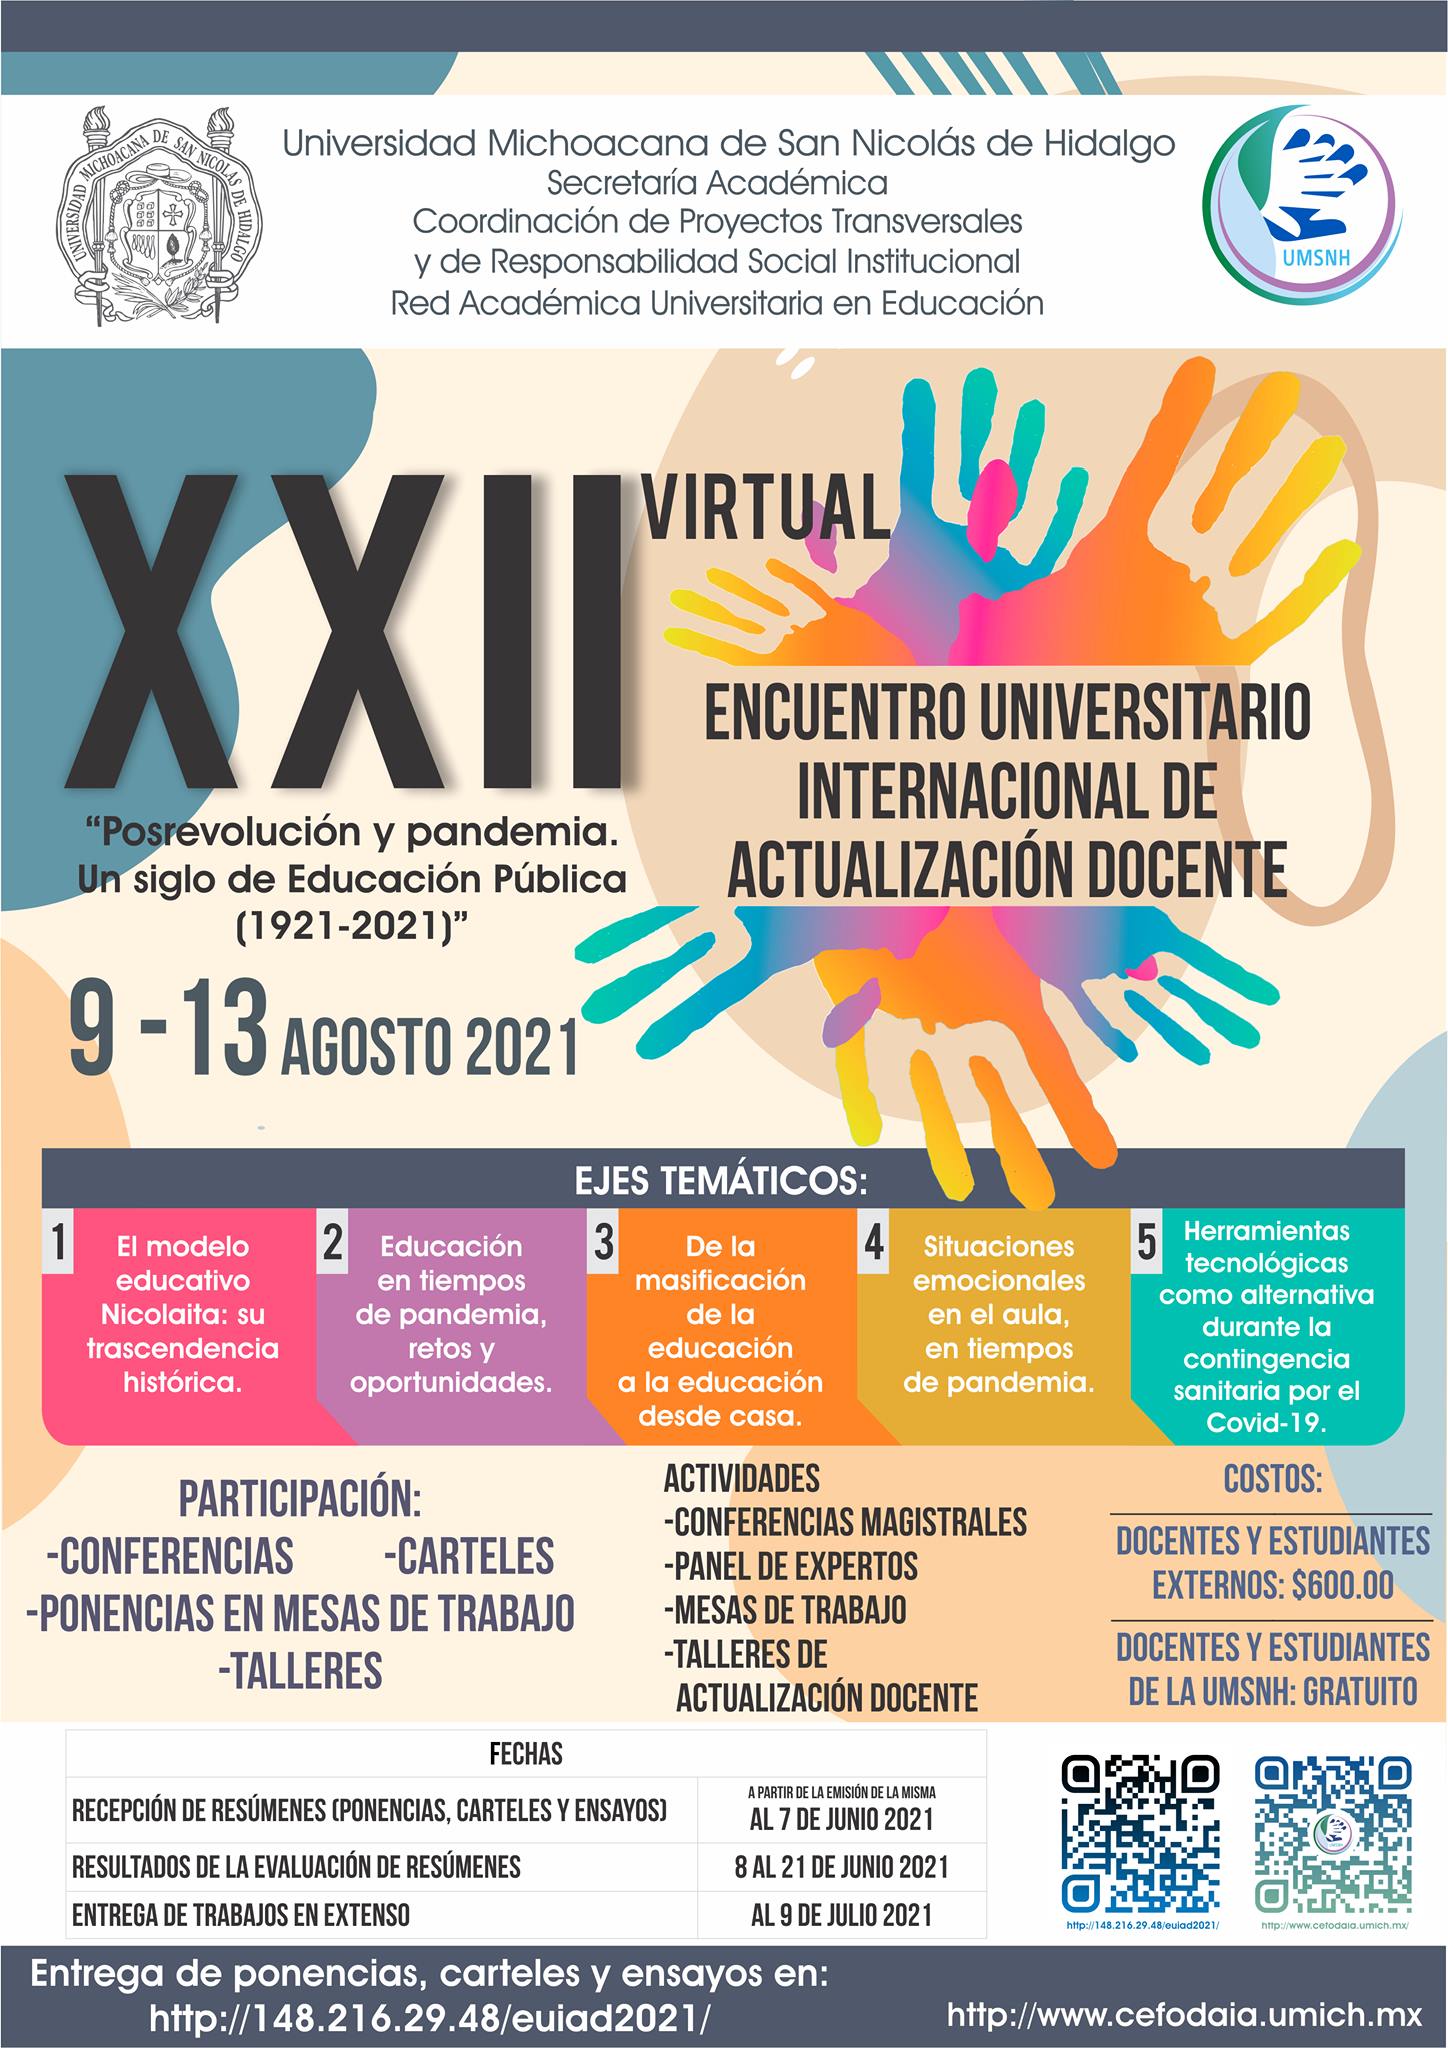 XXII Encuentro Internacional de Actualización Docente en la UMSNH